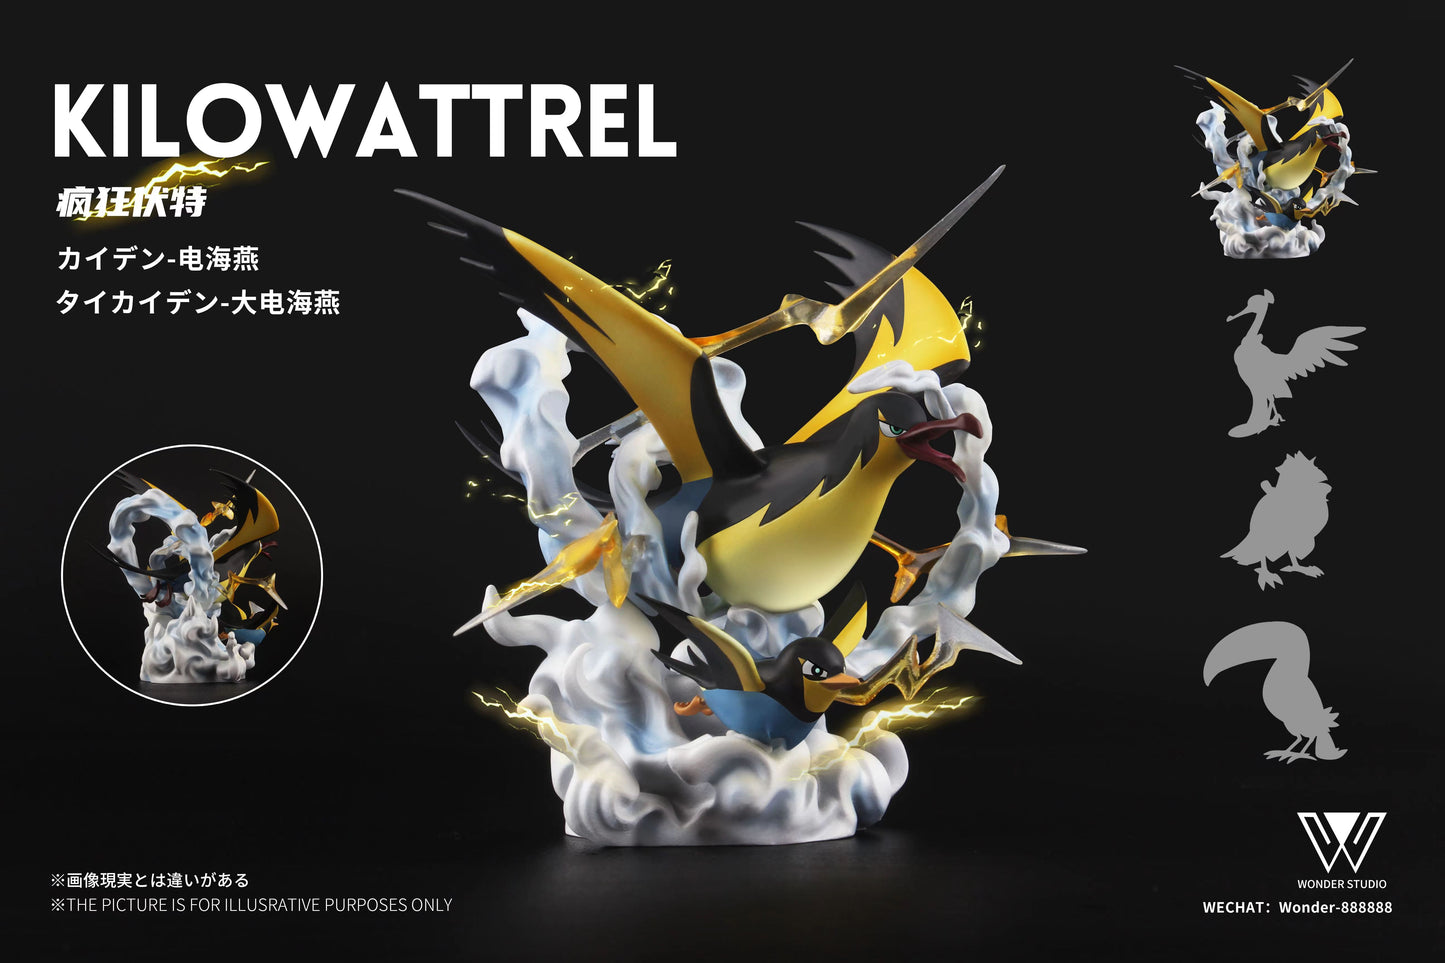 〖Sold Out〗Pokemon Scale World Wattrel Kilowattrel #940 #941 1:20 - Wonder Studio